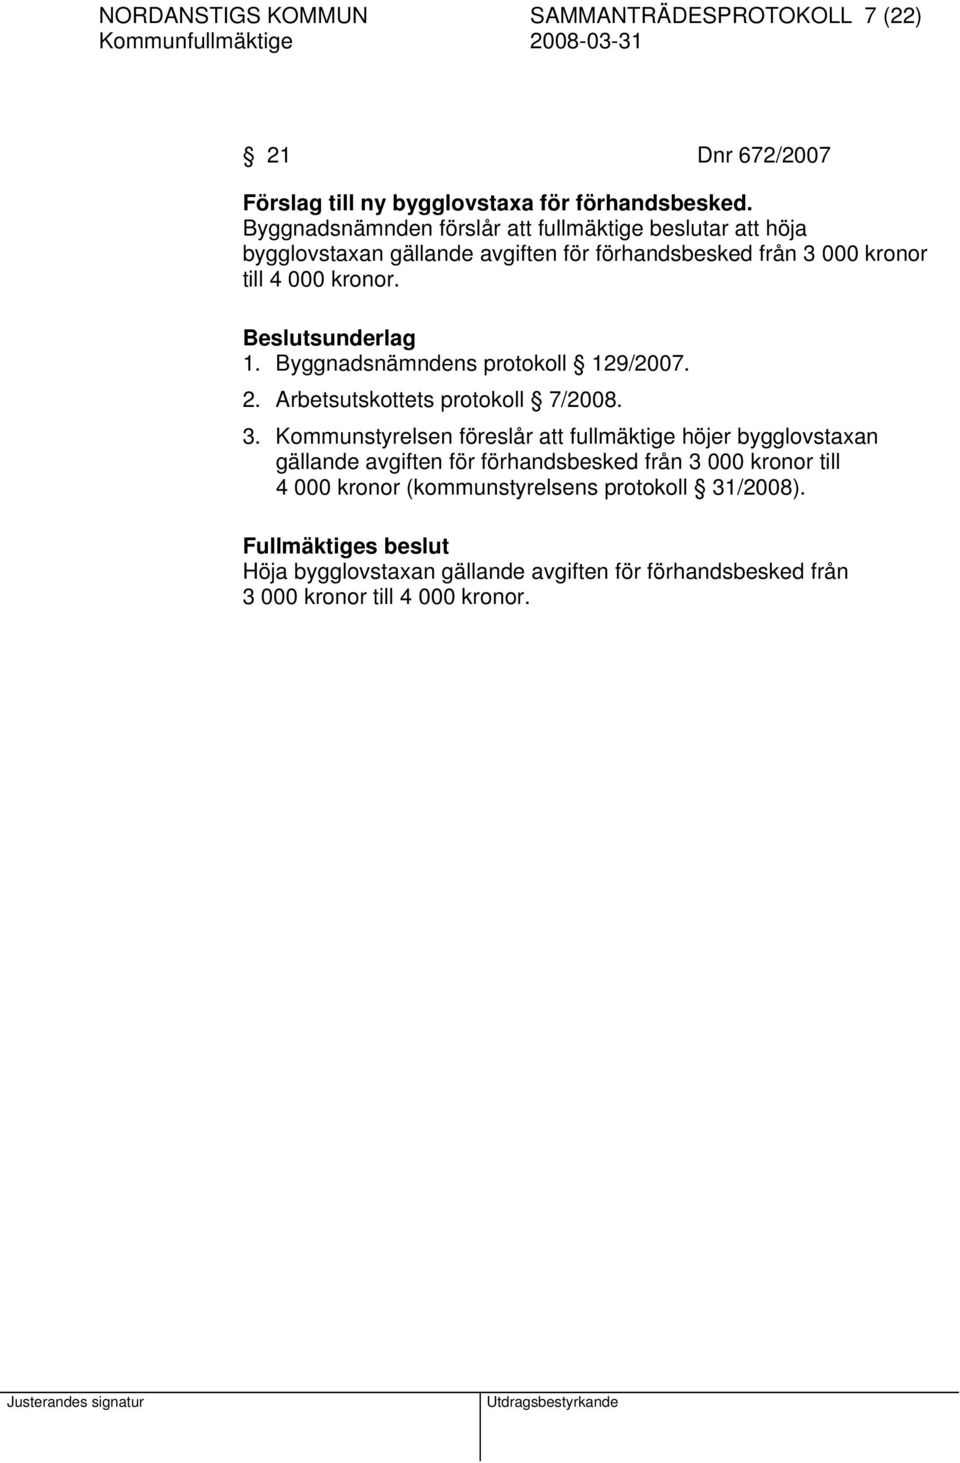 Beslutsunderlag 1. Byggnadsnämndens protokoll 129/2007. 2. Arbetsutskottets protokoll 7/2008. 3.